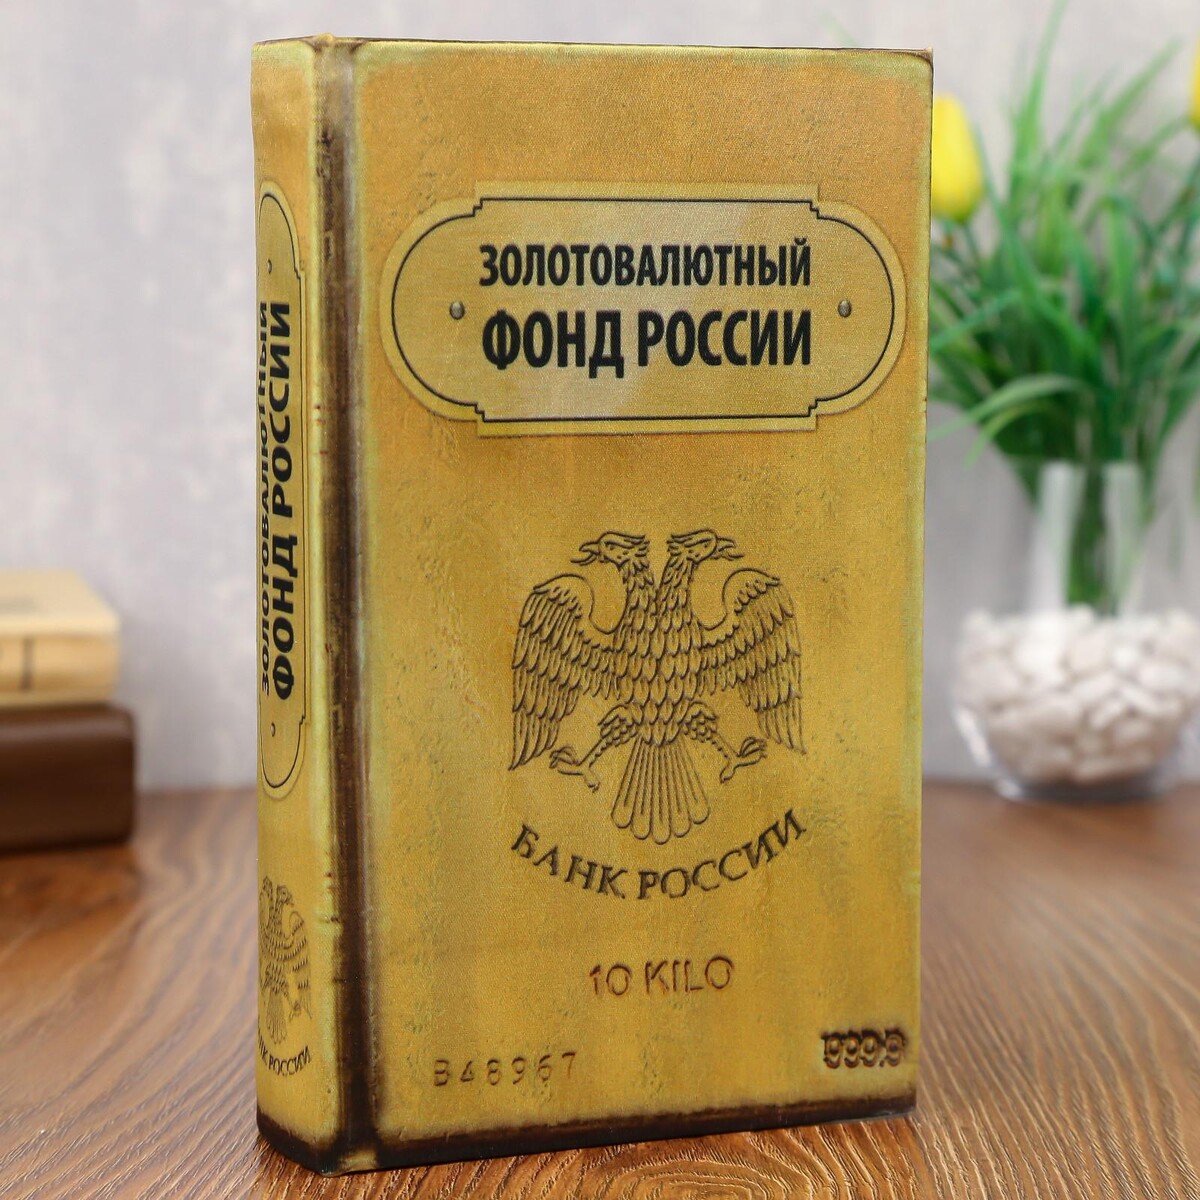 Сейф дерево книга золотовалютный фонд россии 21*13*5 см динозавры россии прошлое настоящее будущее